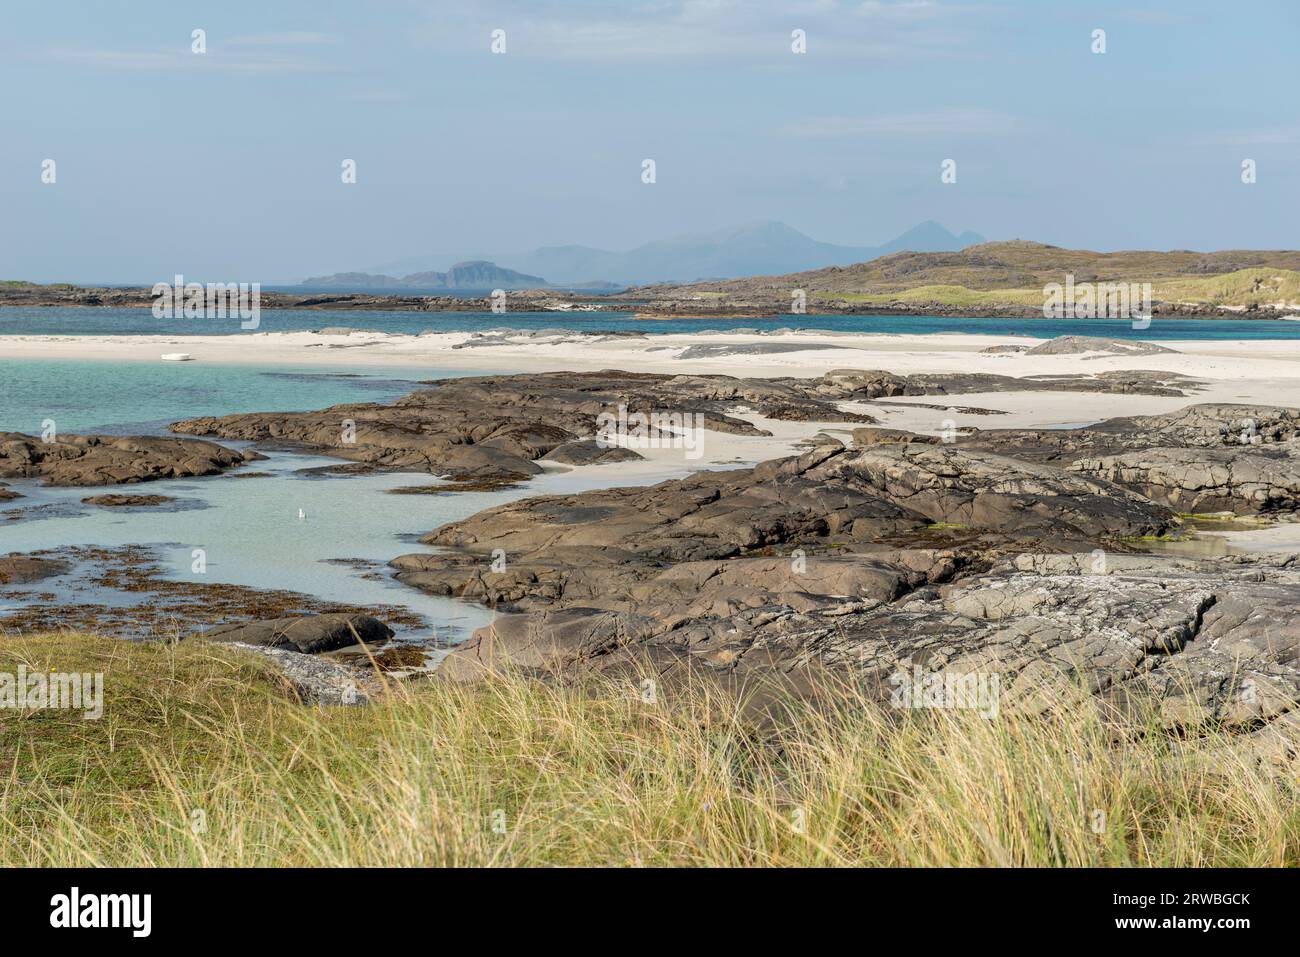 Les plages de sable blanc et les eaux turquoises de la baie de Sanna, péninsule d'Ardnamurchan, Écosse, Royaume-Uni Banque D'Images